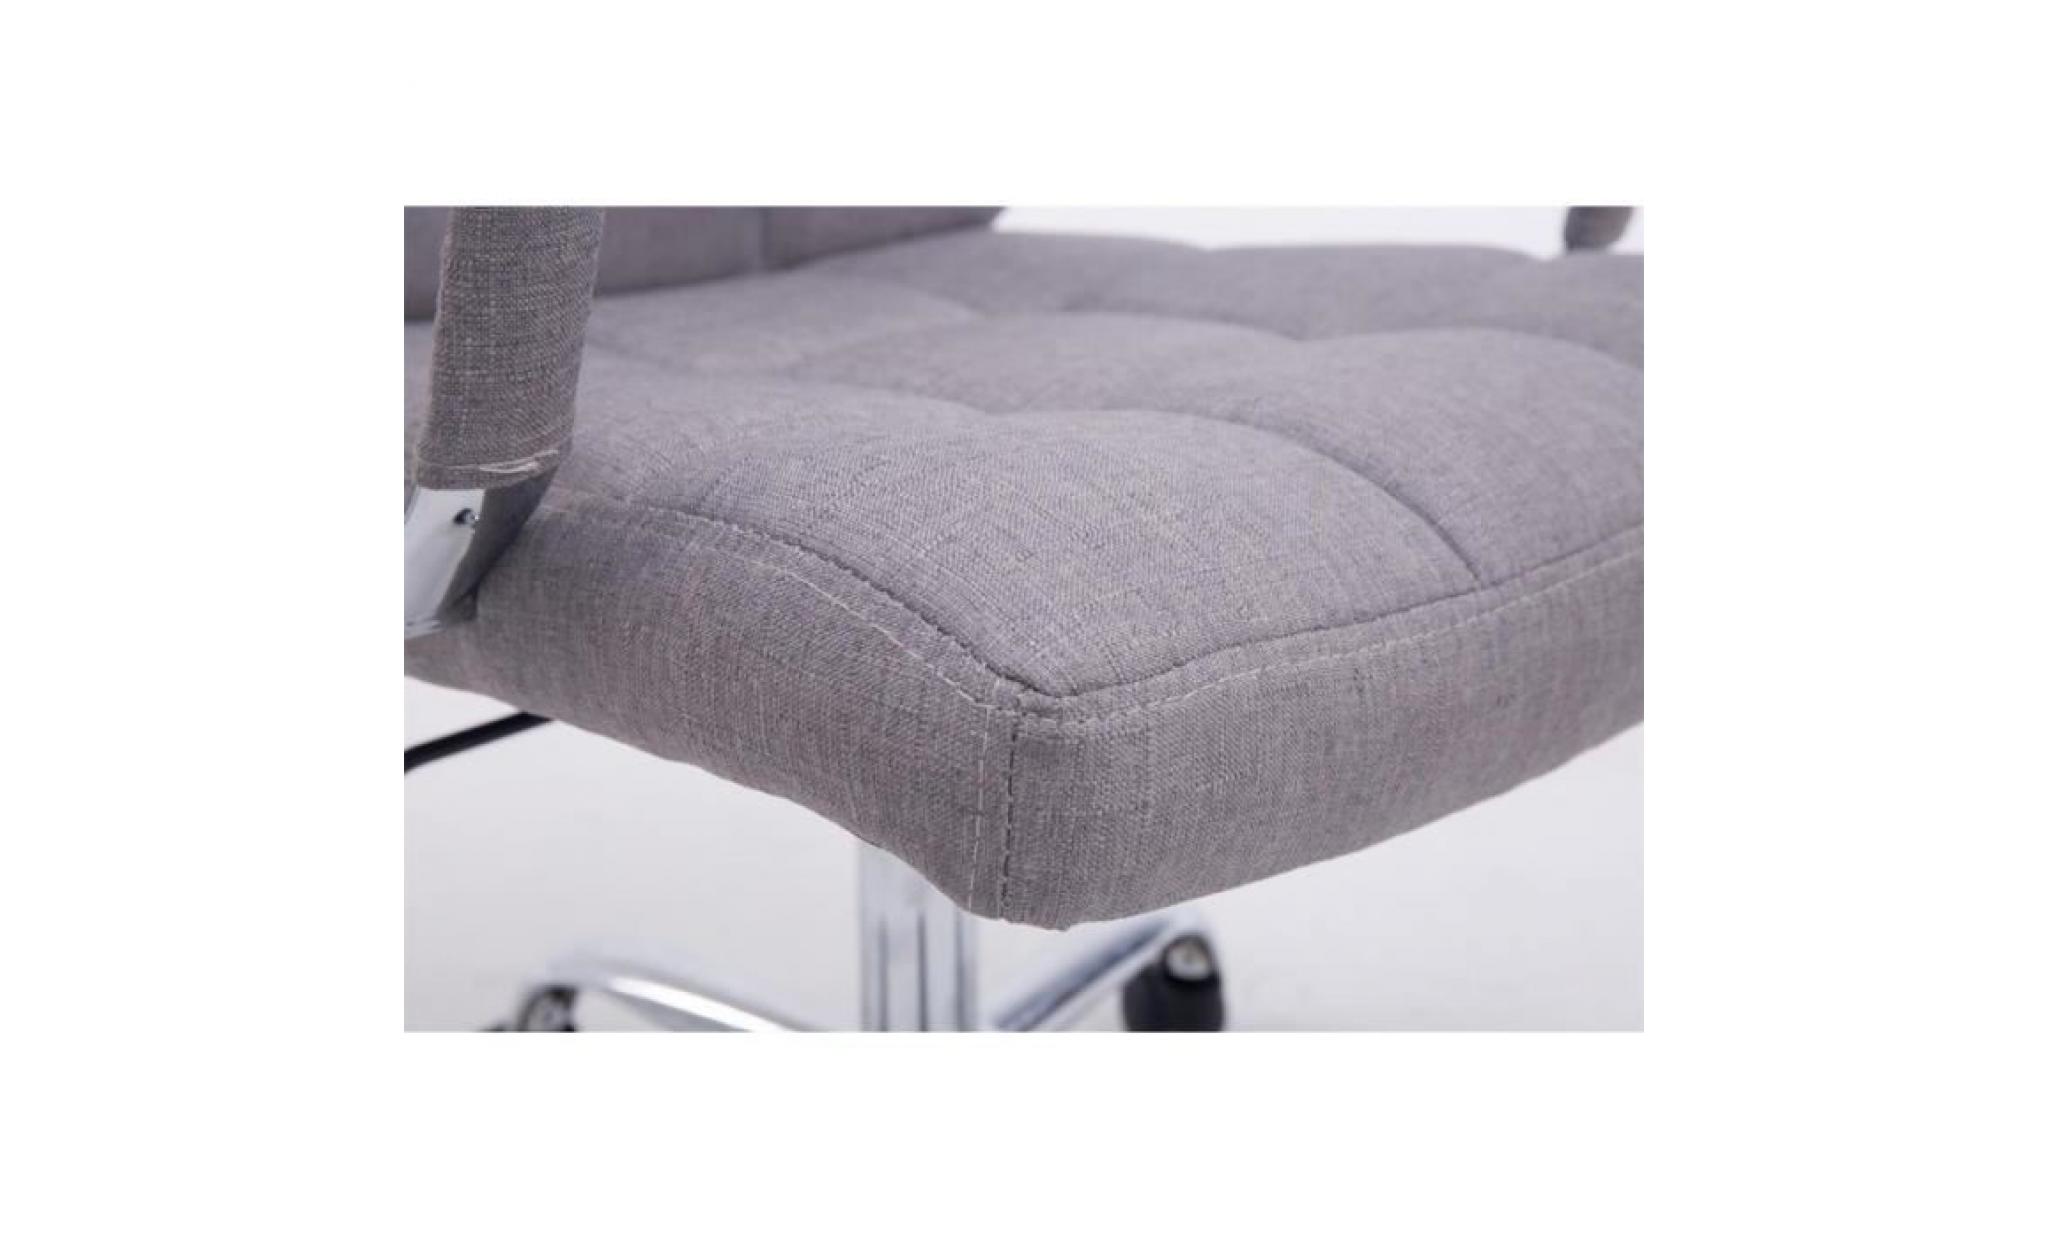 chaise fauteuil de bureau à roulettes en tissu gris foncé hauteur réglable bur10110 pas cher